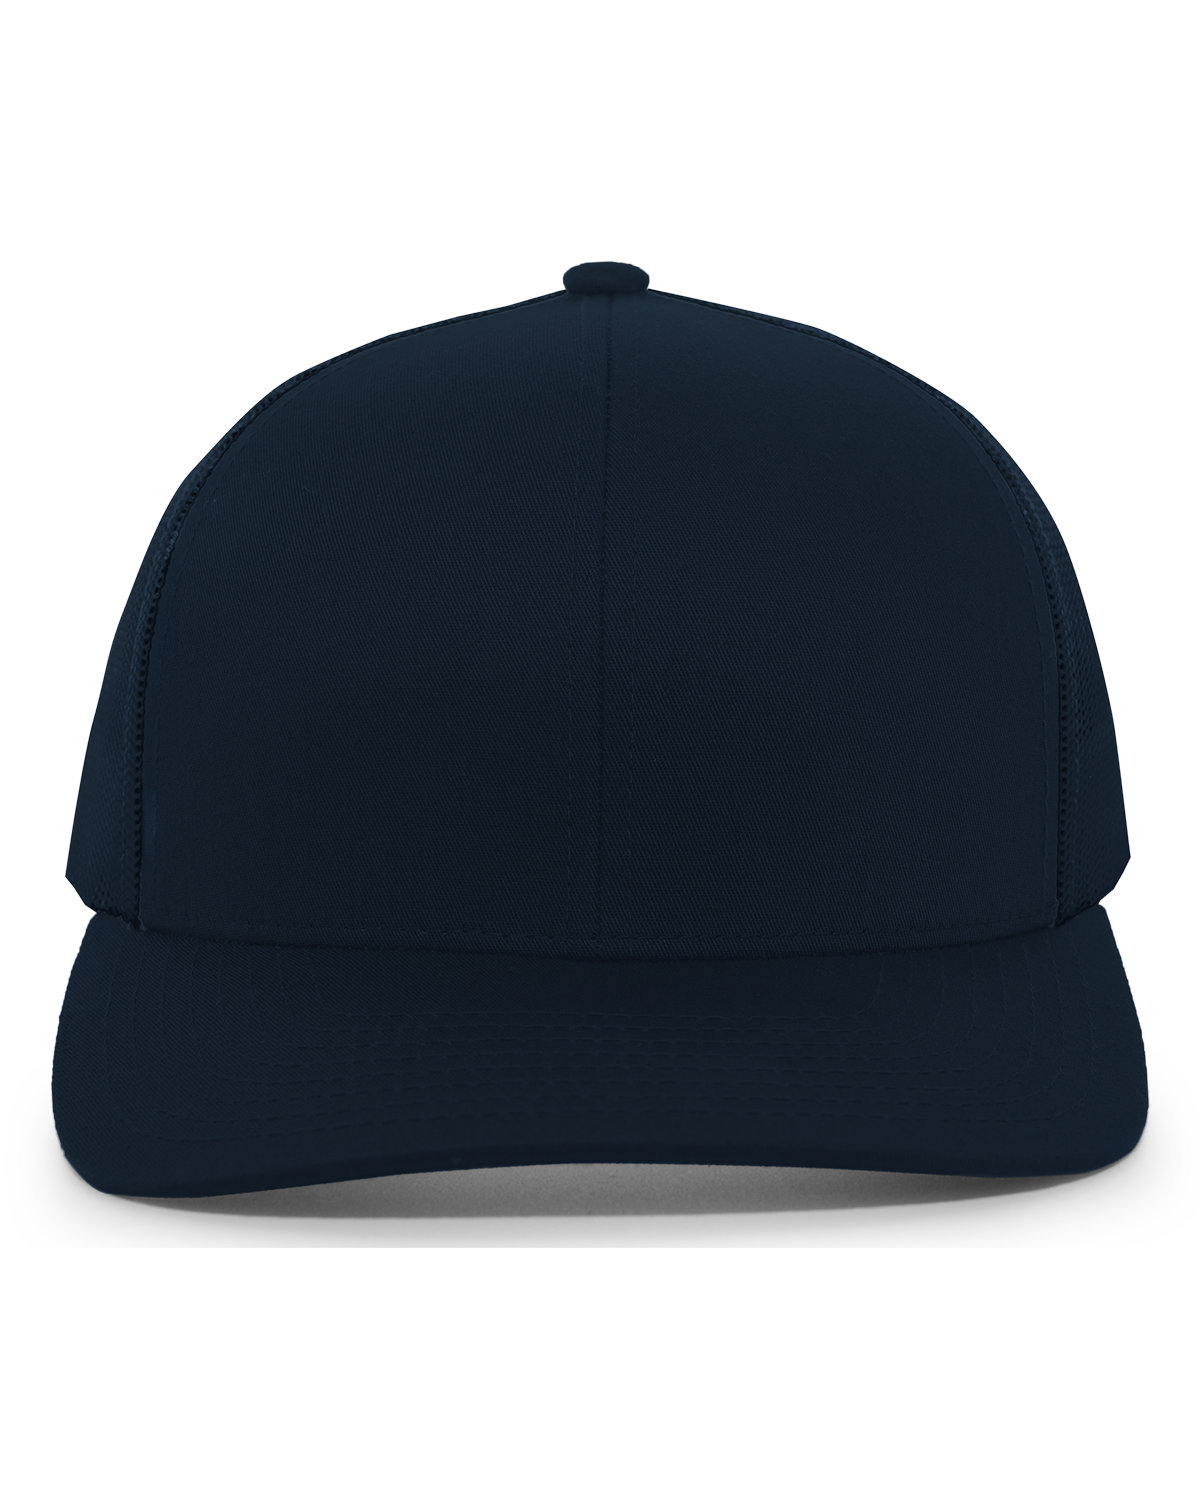 Pacific Headwear Trucker Snapback Hat NAVY 